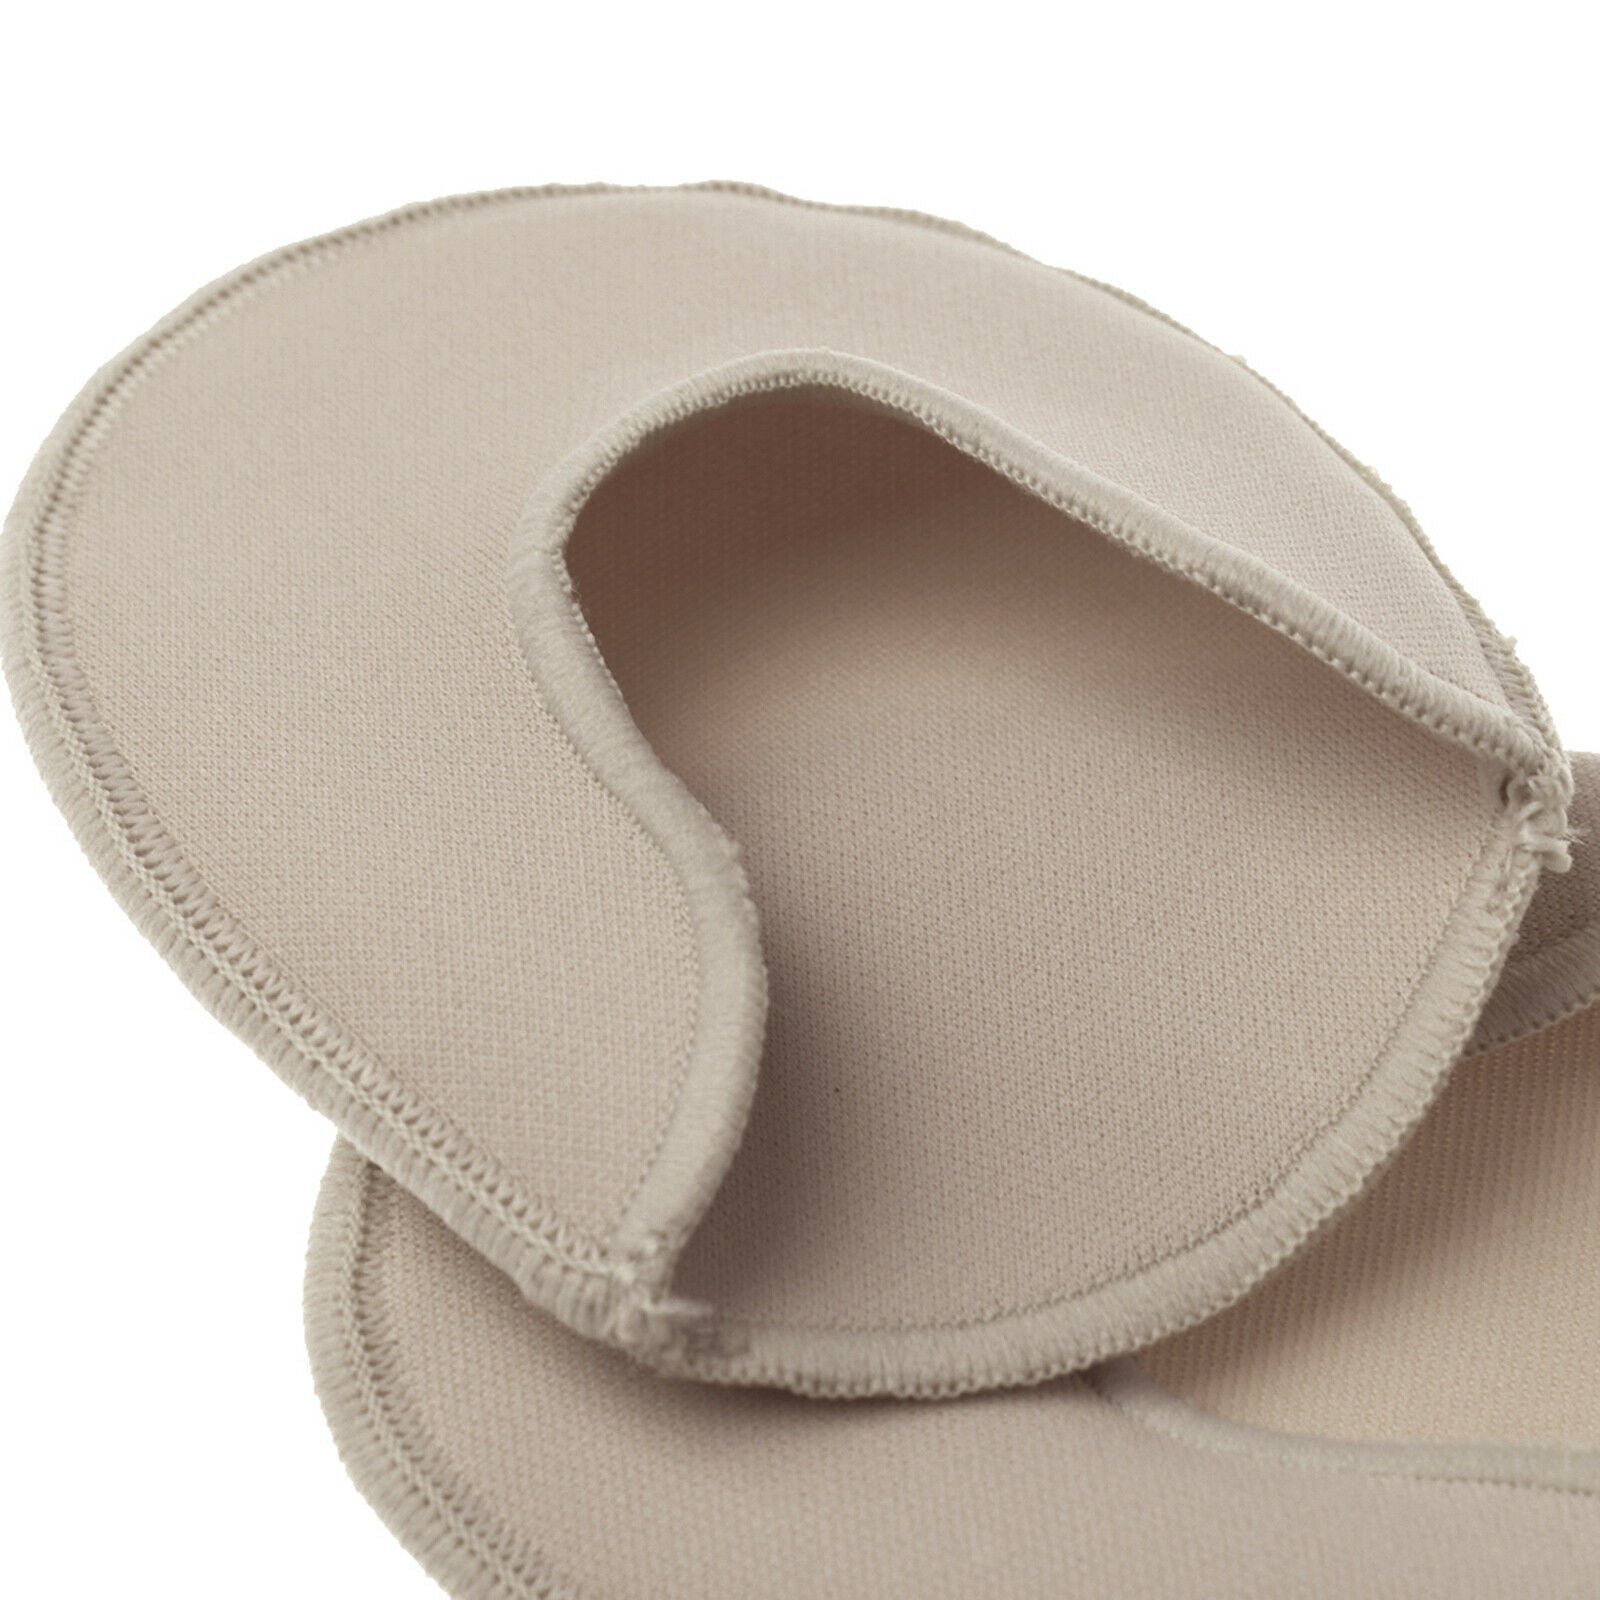 1 Pair of Ballet Dance Tiptoe Toe Caps/Covers/Pads/Protectors/Cushion